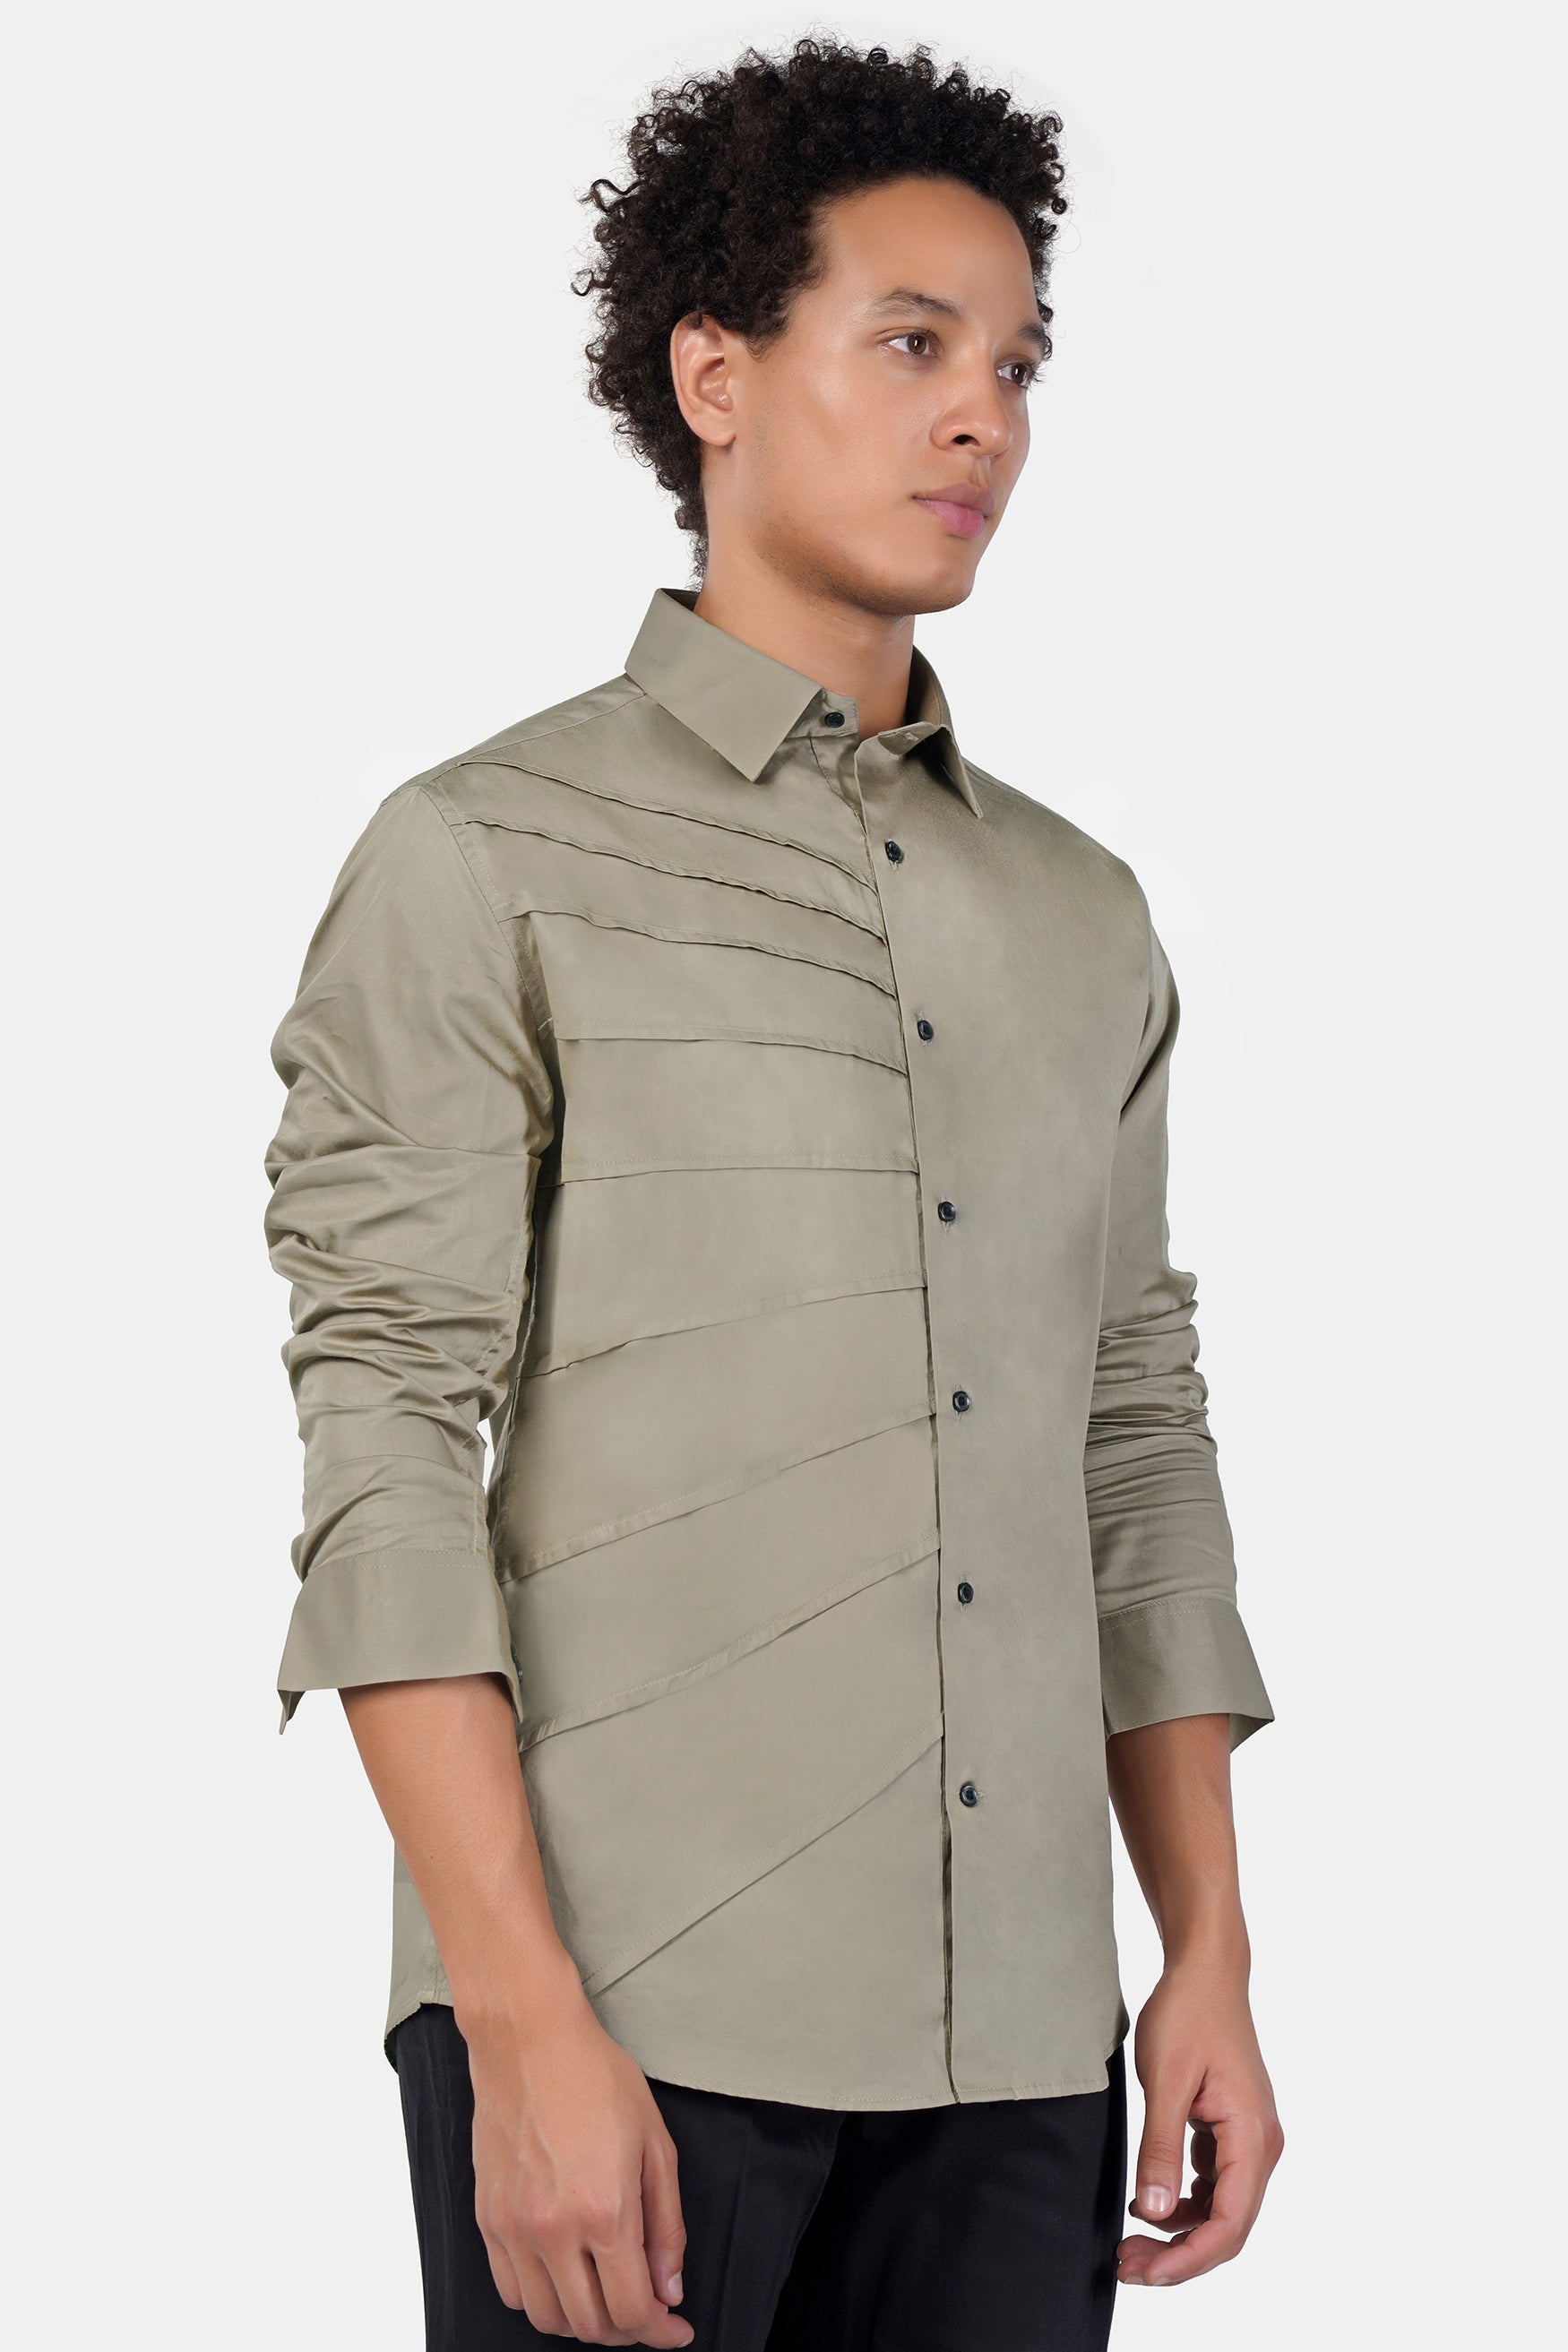 Zorba Brown Tucks Subtle Sheen Super Soft Premium Cotton Designer Shirt